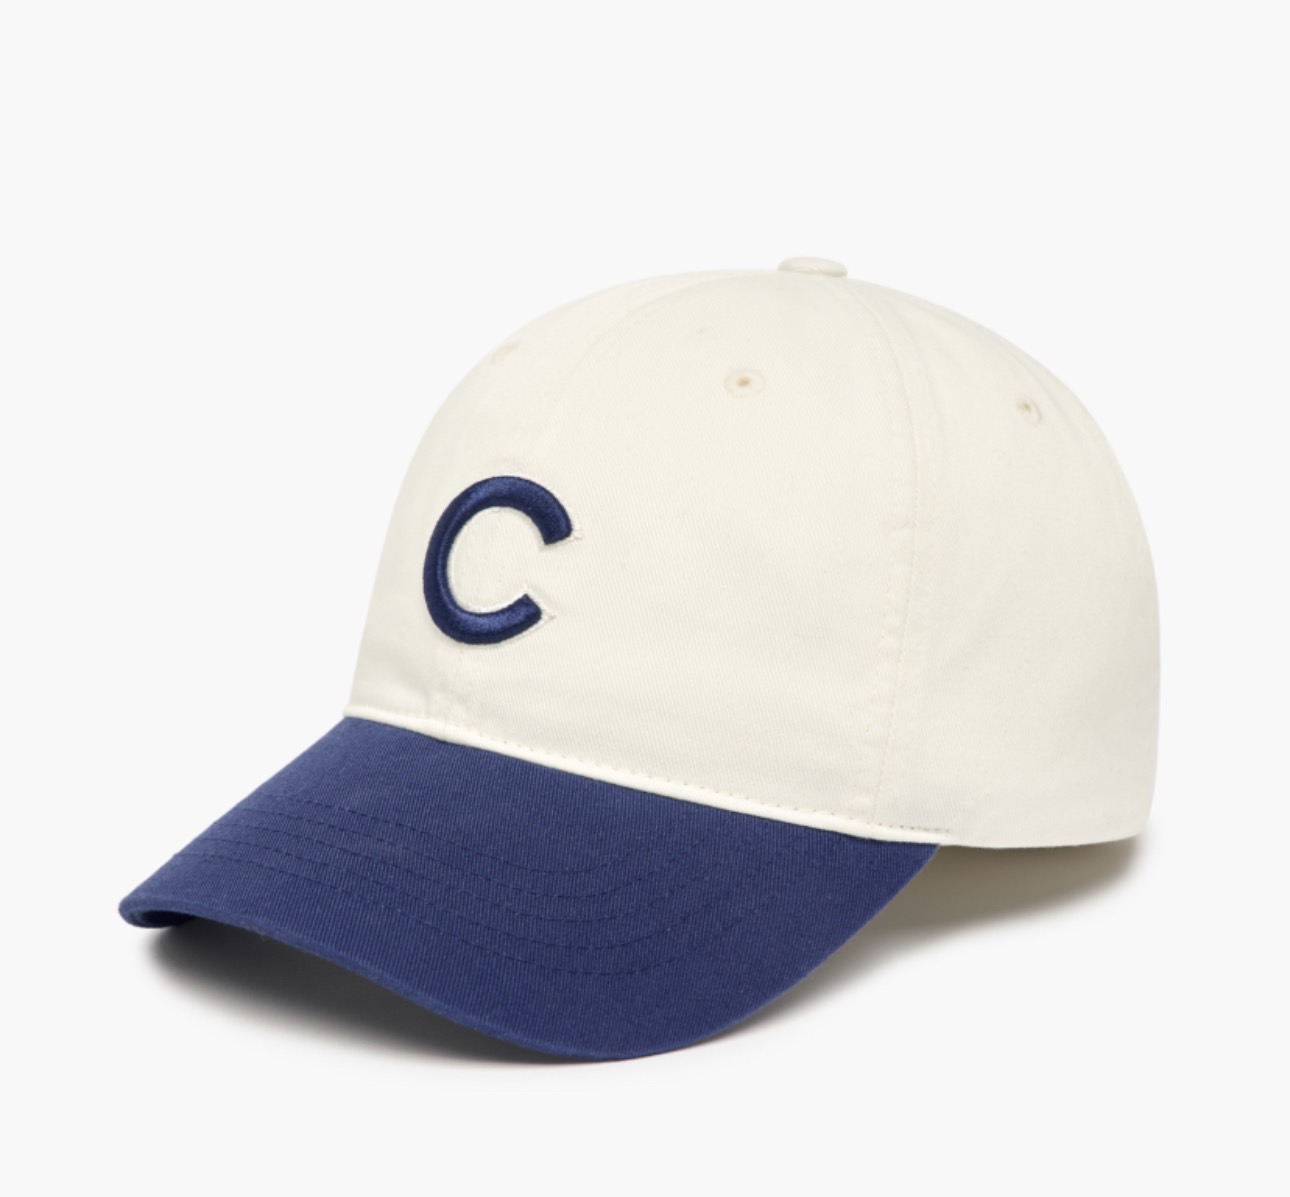 Mũ MLB Basic color unstructured ball cap New York Yankees 3Acp3303N màu xanh lá xanh dương đỏ logo chữ b c ny la